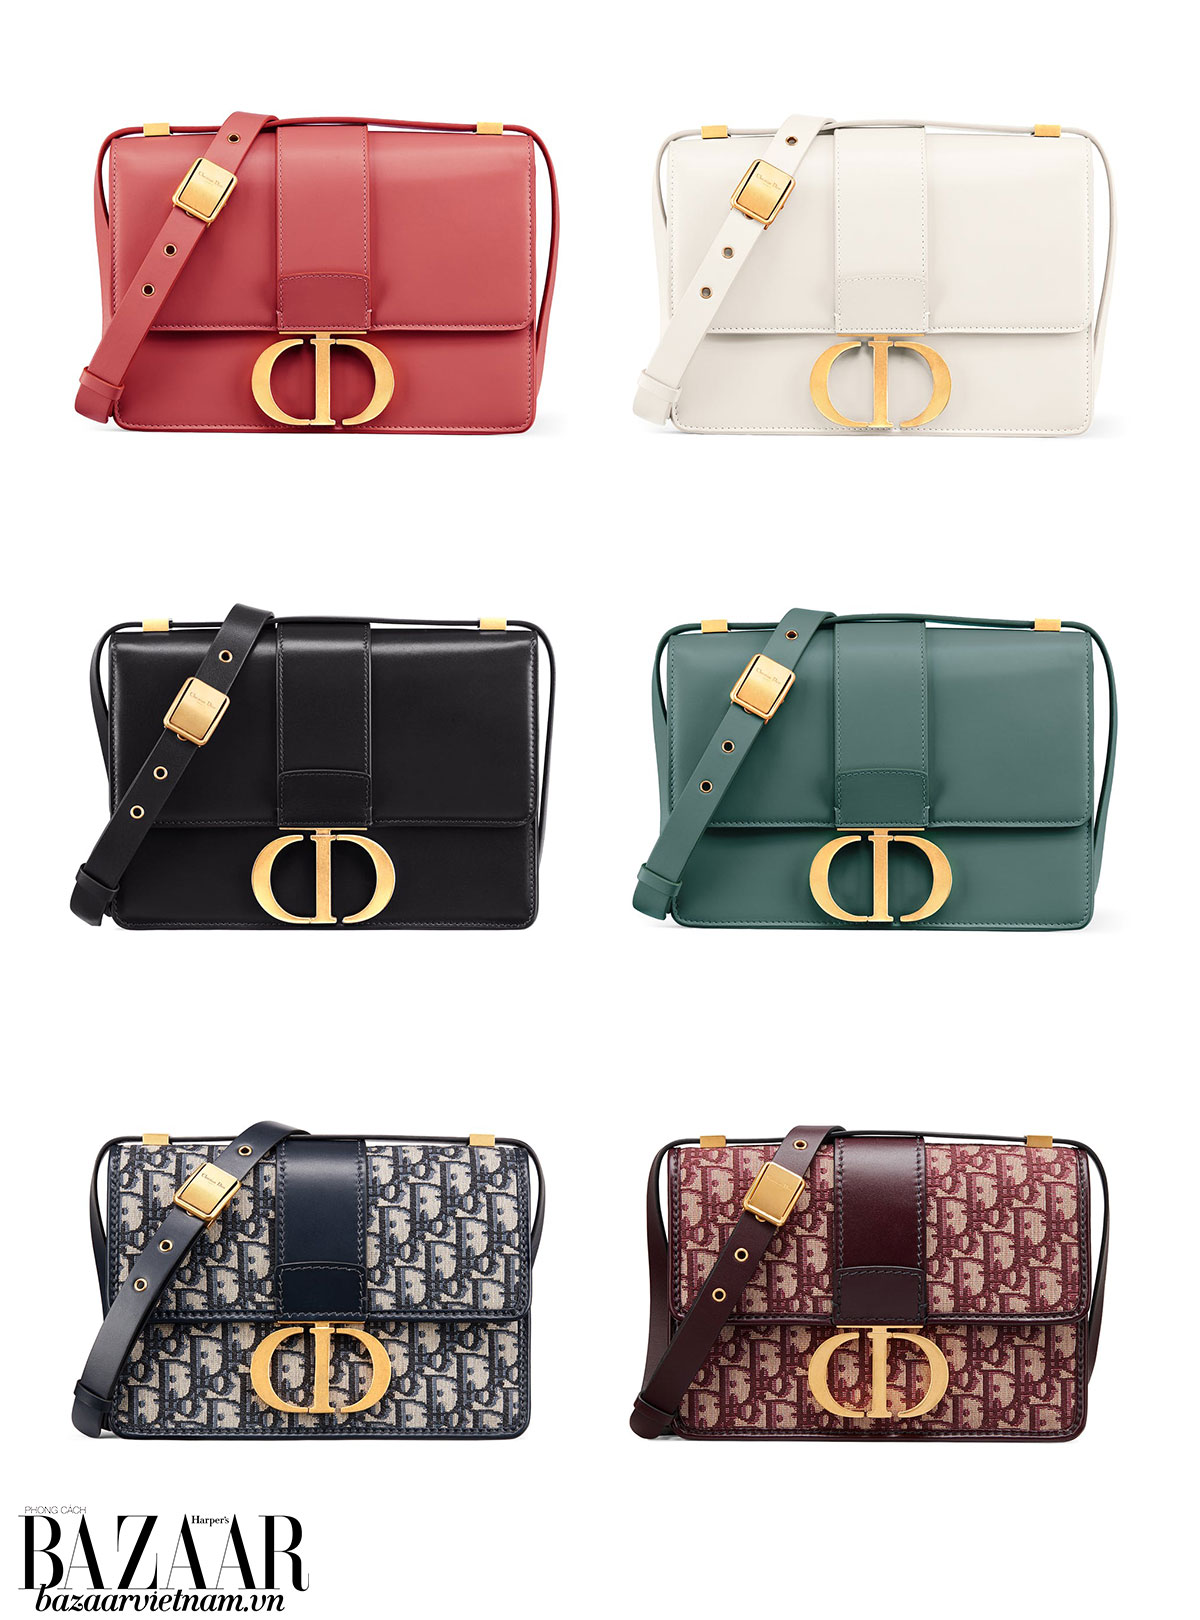 7 Cách phân biệt túi xách Dior thật giả đơn giản chính xác nhat